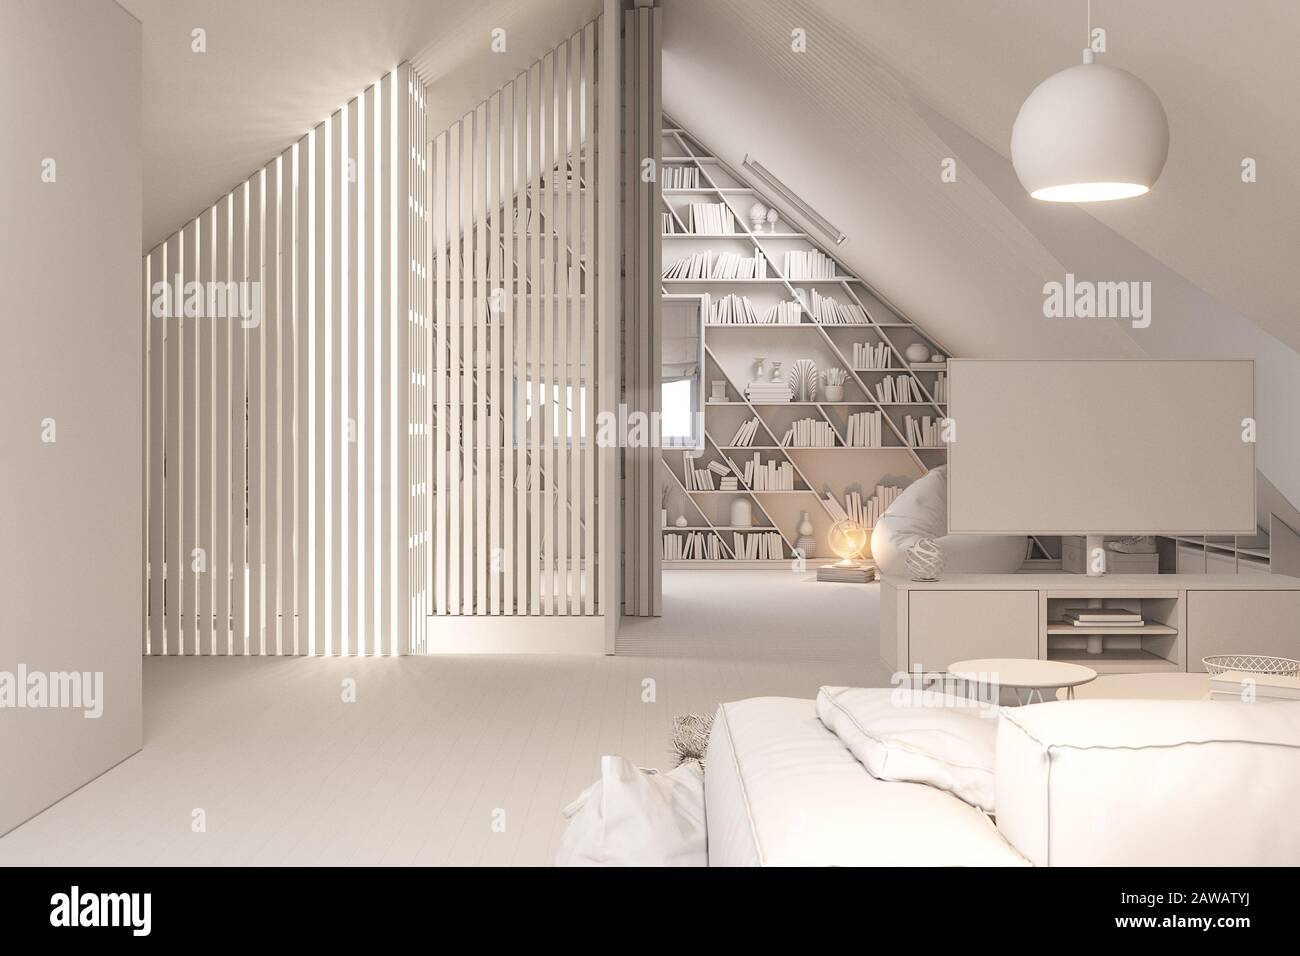 360 panorama sferica di interior design lounge area del piano attico in un cottage privato. 3d illustrazione dell'interno della casa in Scandinavia Foto Stock